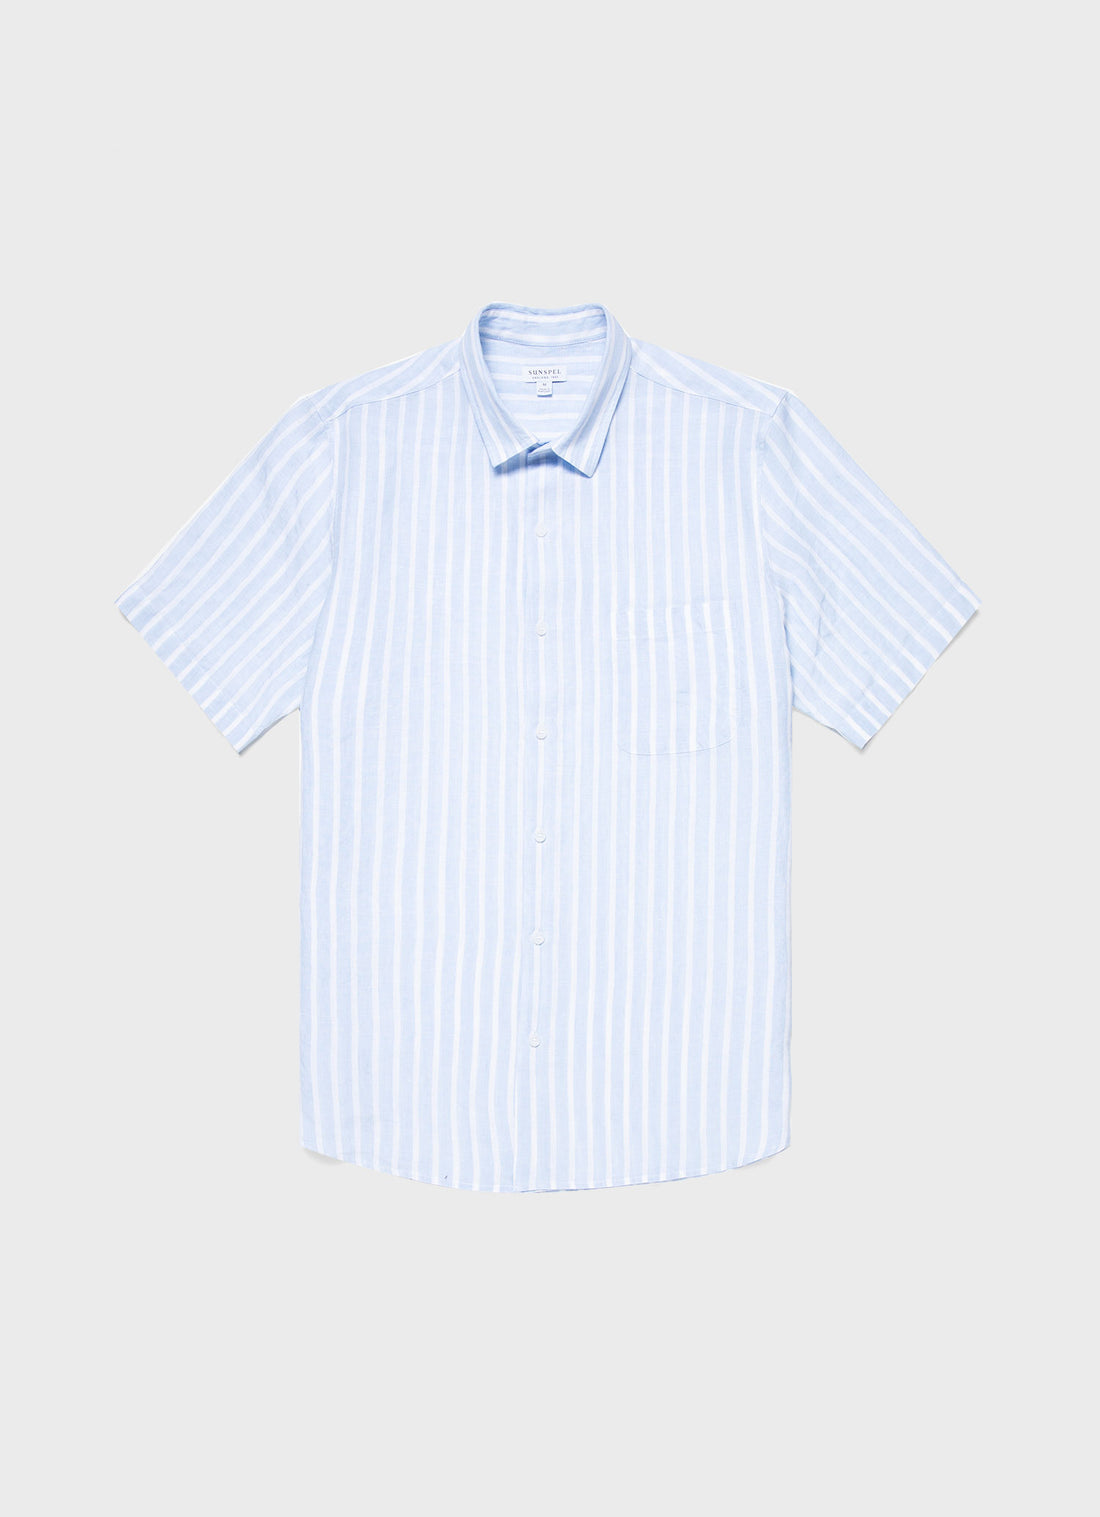 Men's Short Sleeve Linen Shirt in Light Blue/White